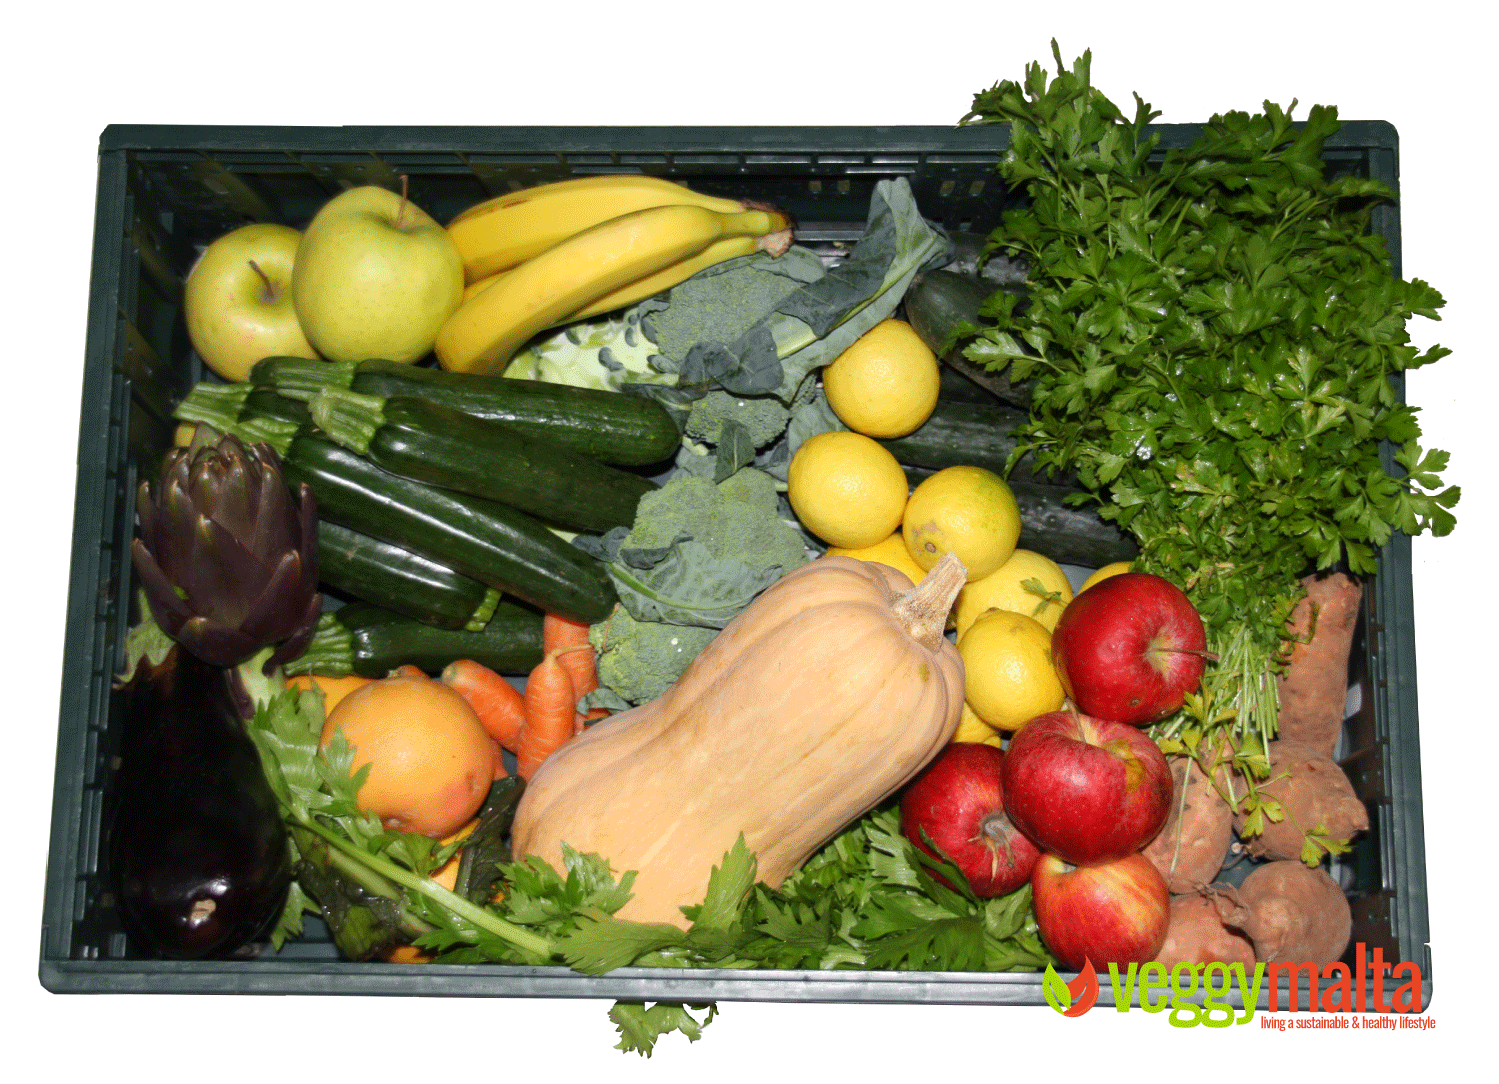 naturali-malta-vegetable-box